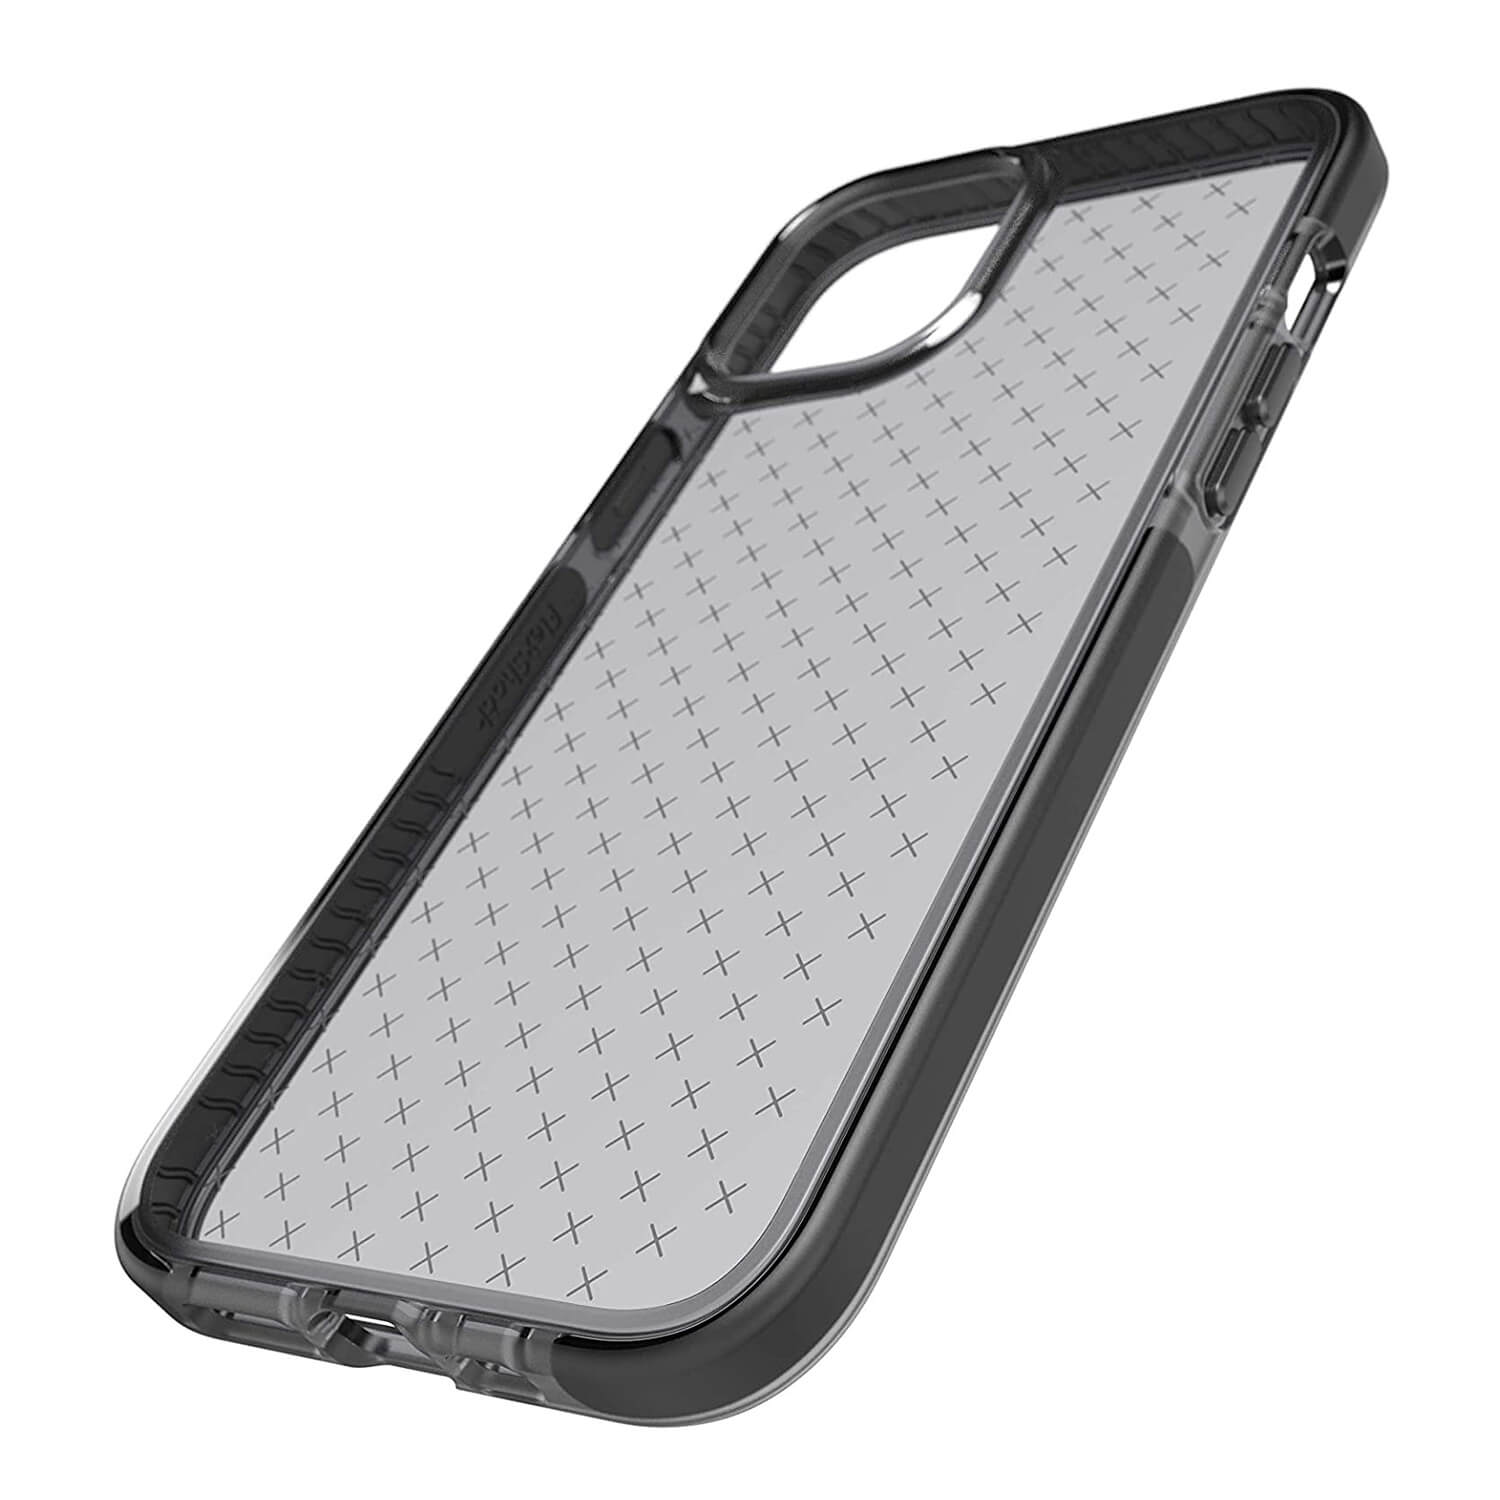 Tech21 iPhone 12 mini Case Evo Check Black